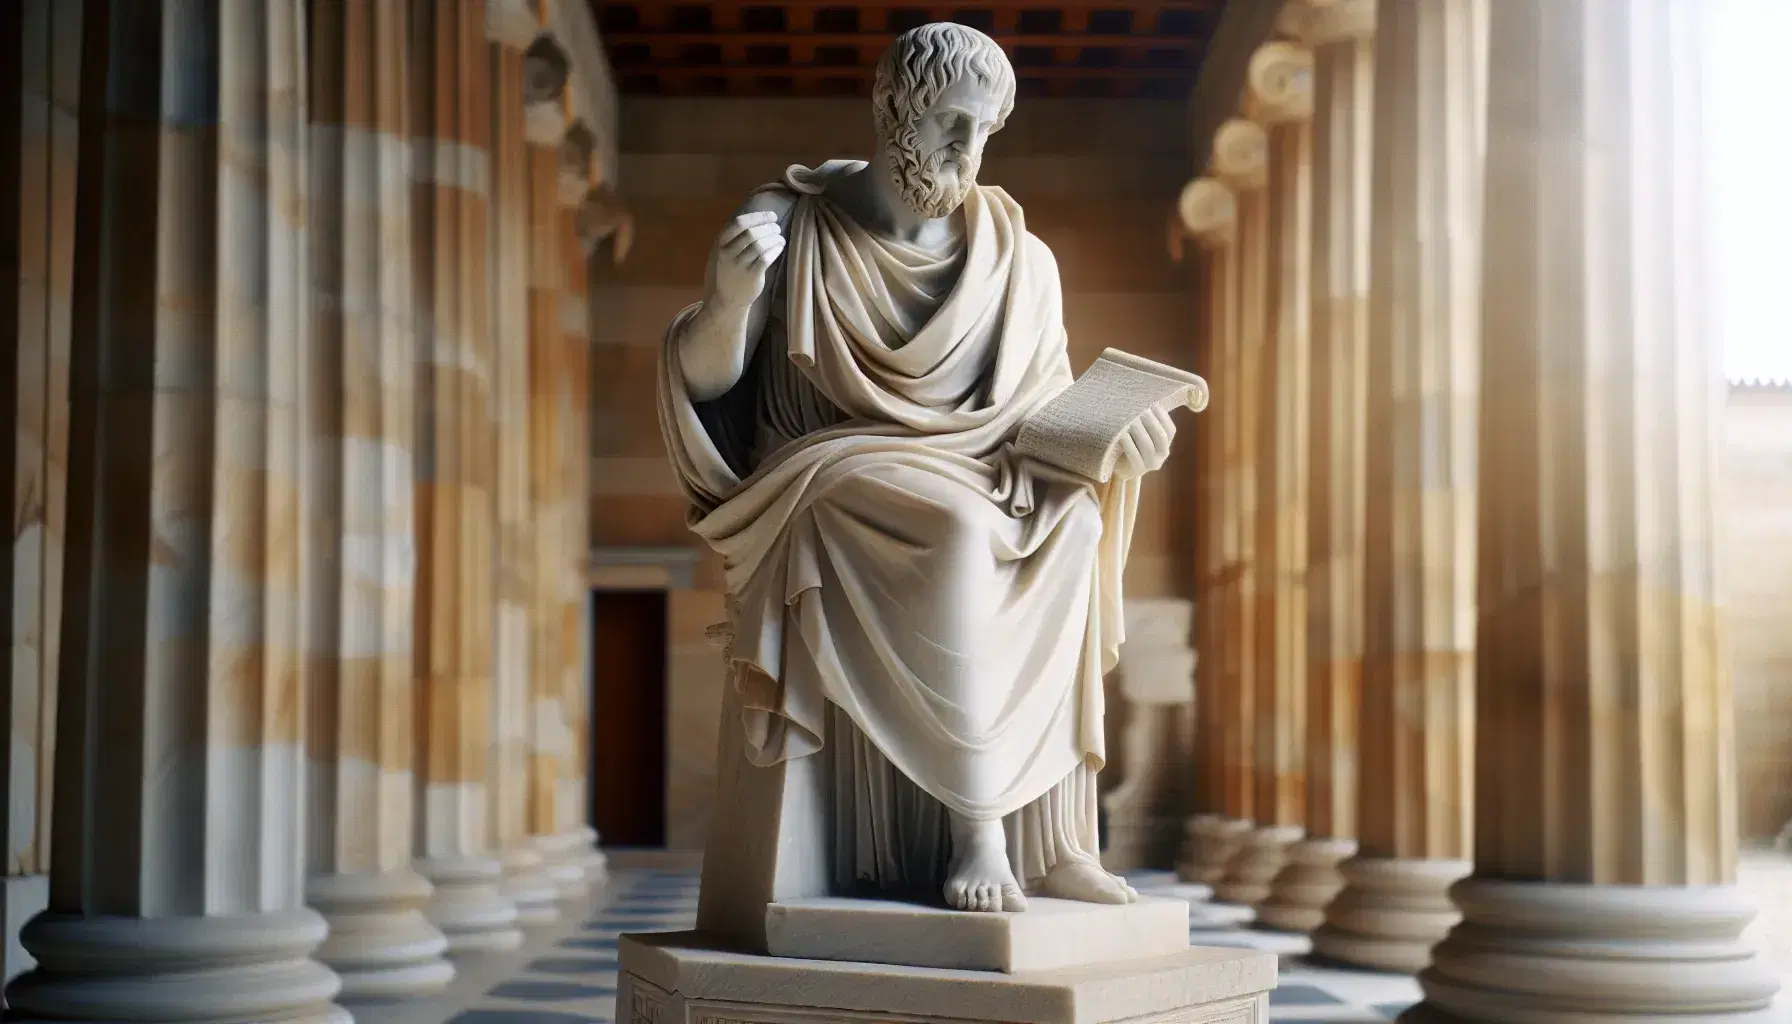 Estatua de mármol blanco de Platón con un pergamino en mano y la otra alzada, en un entorno de columnas griegas, destacando detalles finos y juego de luces y sombras.